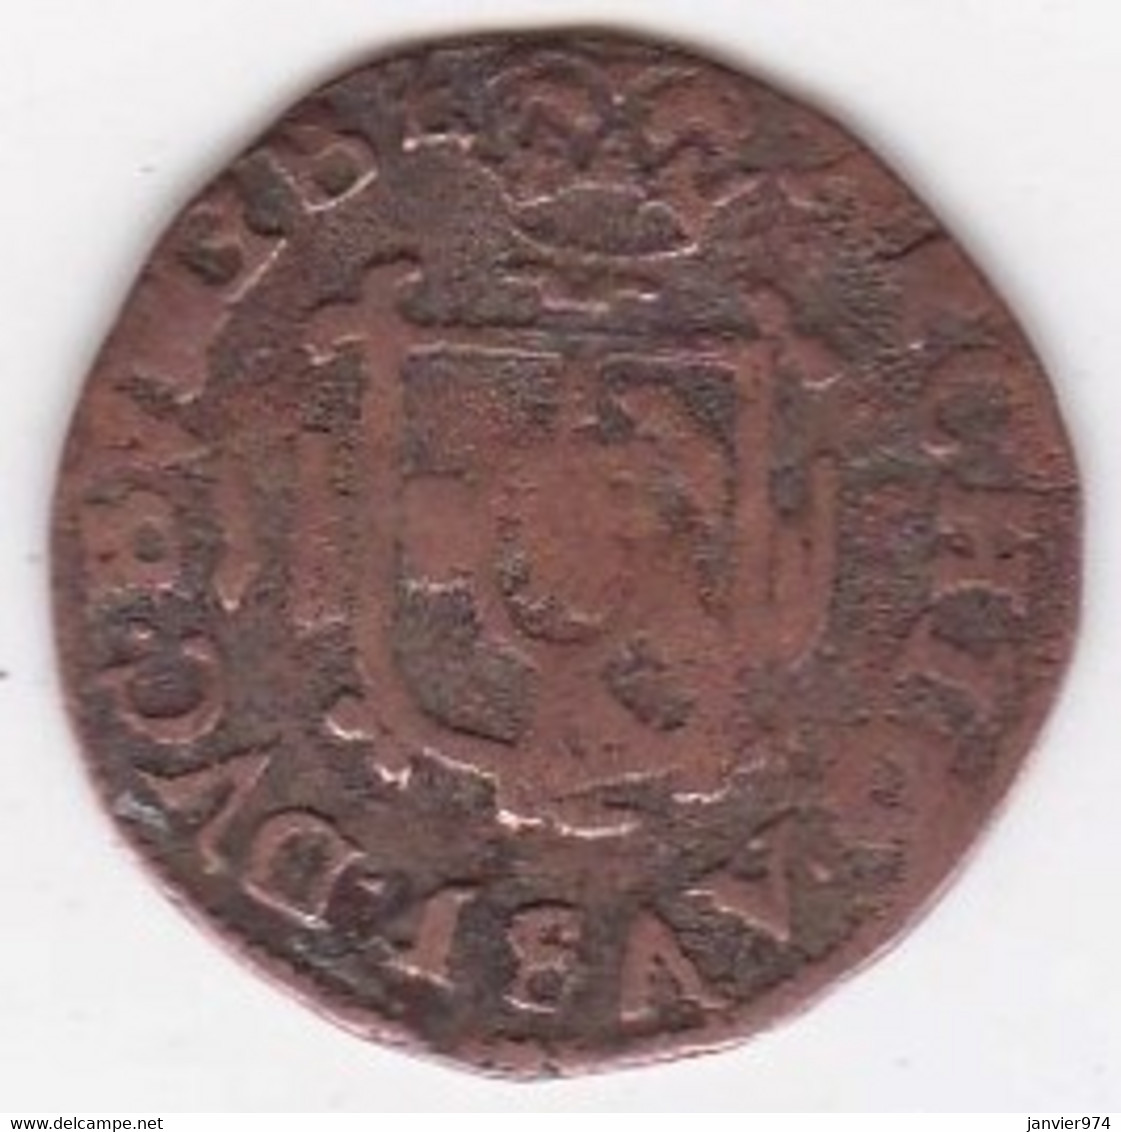 Pays-Bas Espagnols Duché De BRABANT 1 Gigot 1616 Bois-le-Duc,  Albert Et Isabelle, En Cuivre, KM# 32, - 1556-1713 Spaanse Nederlanden